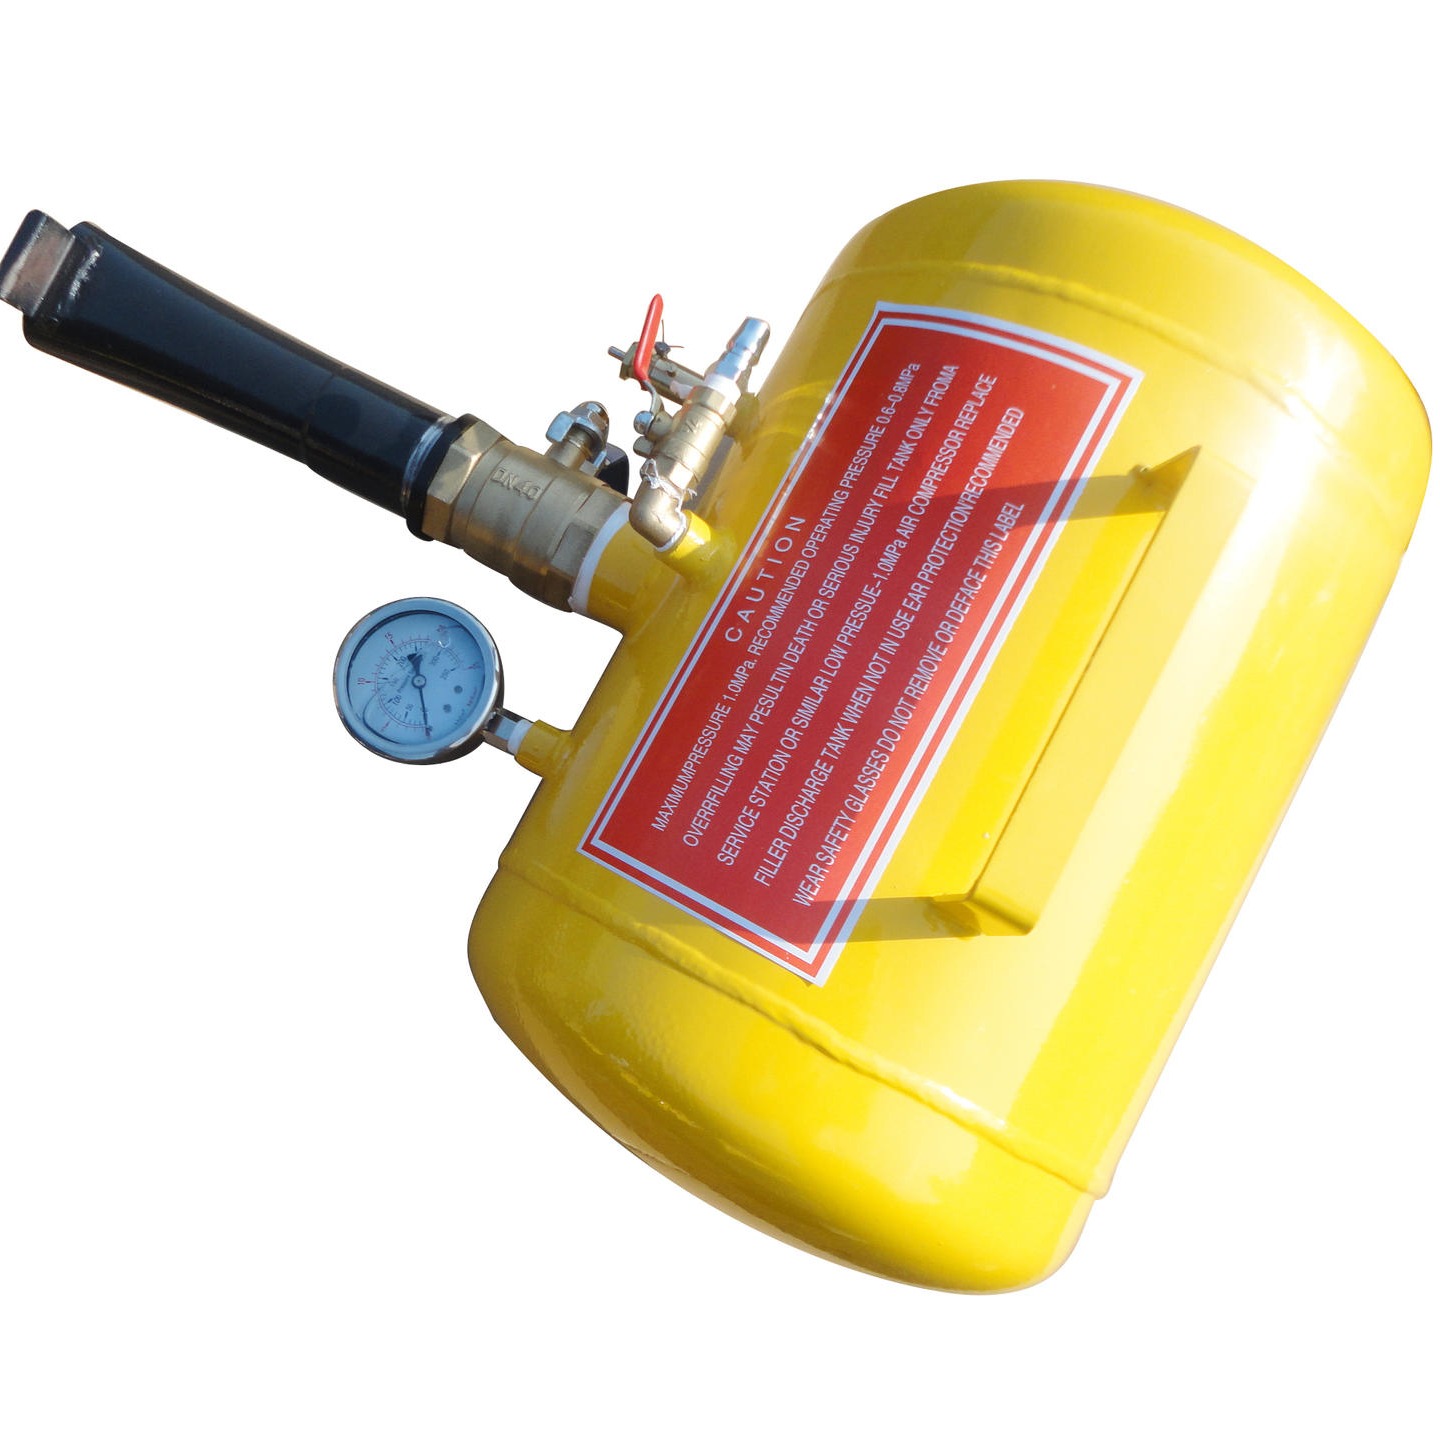 高压充气罐5加仑钢材质手动操作图片